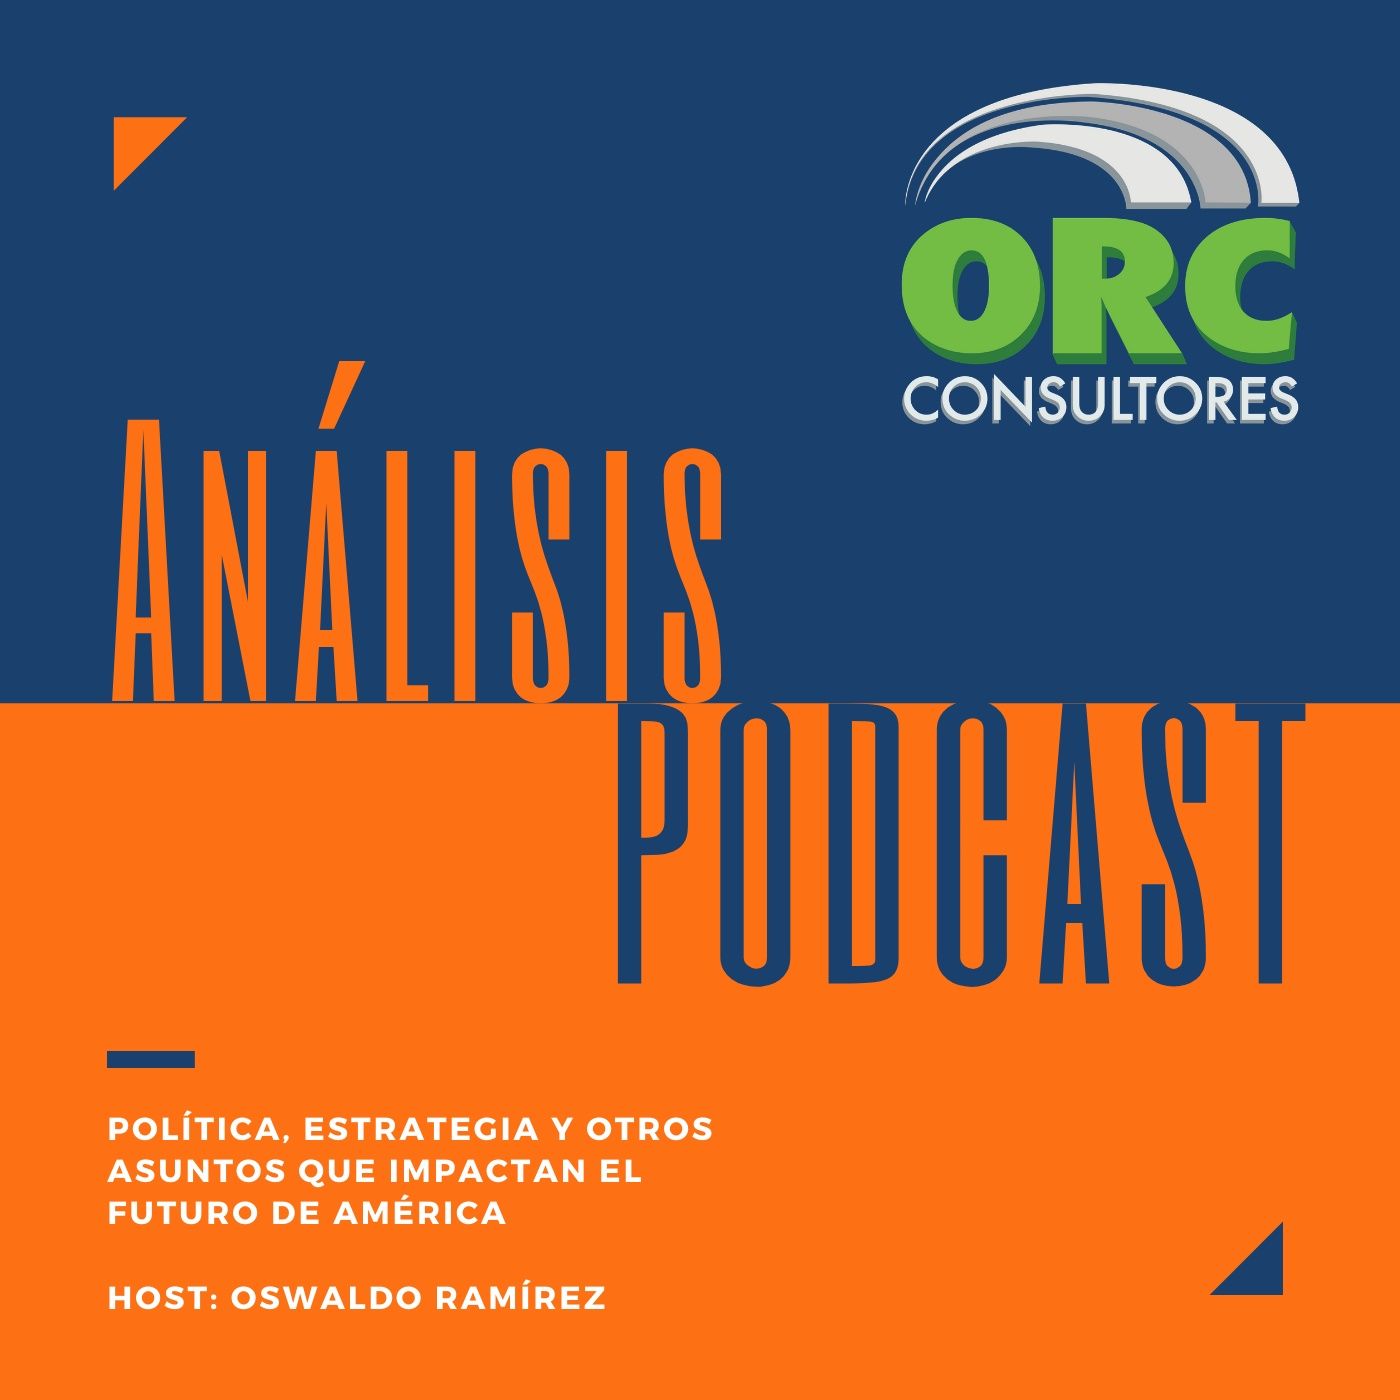 Análisis ORC Consultores